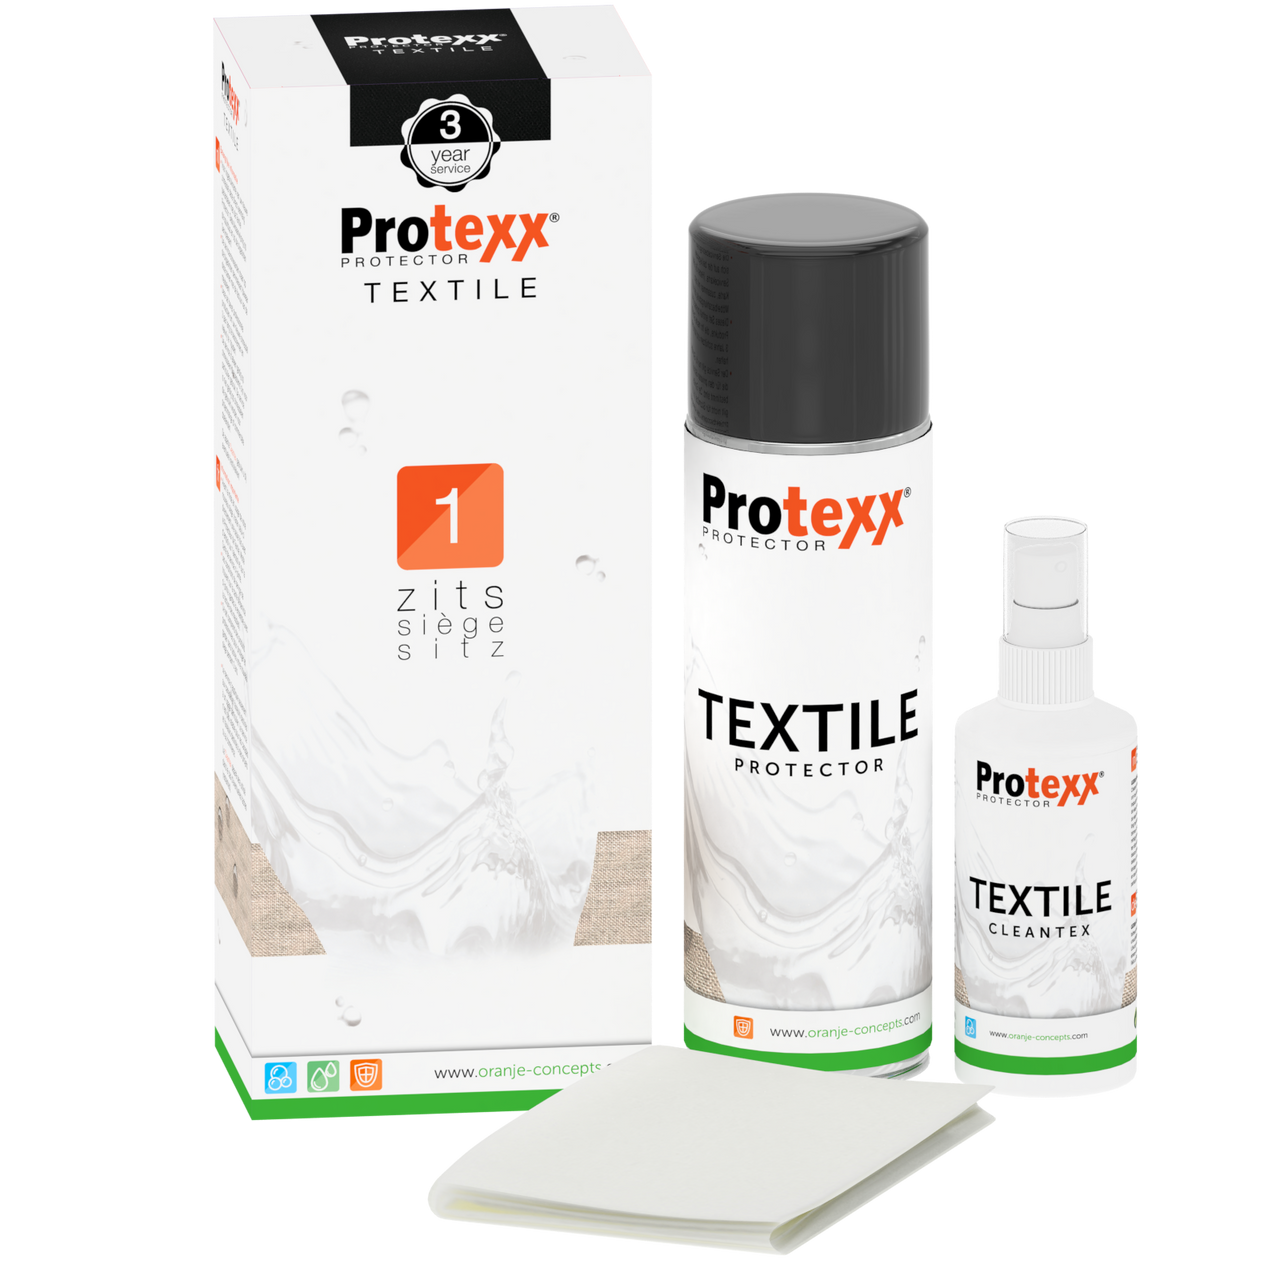 Protexx vlekkenservice voor 1 zitplaats (3 jaar)